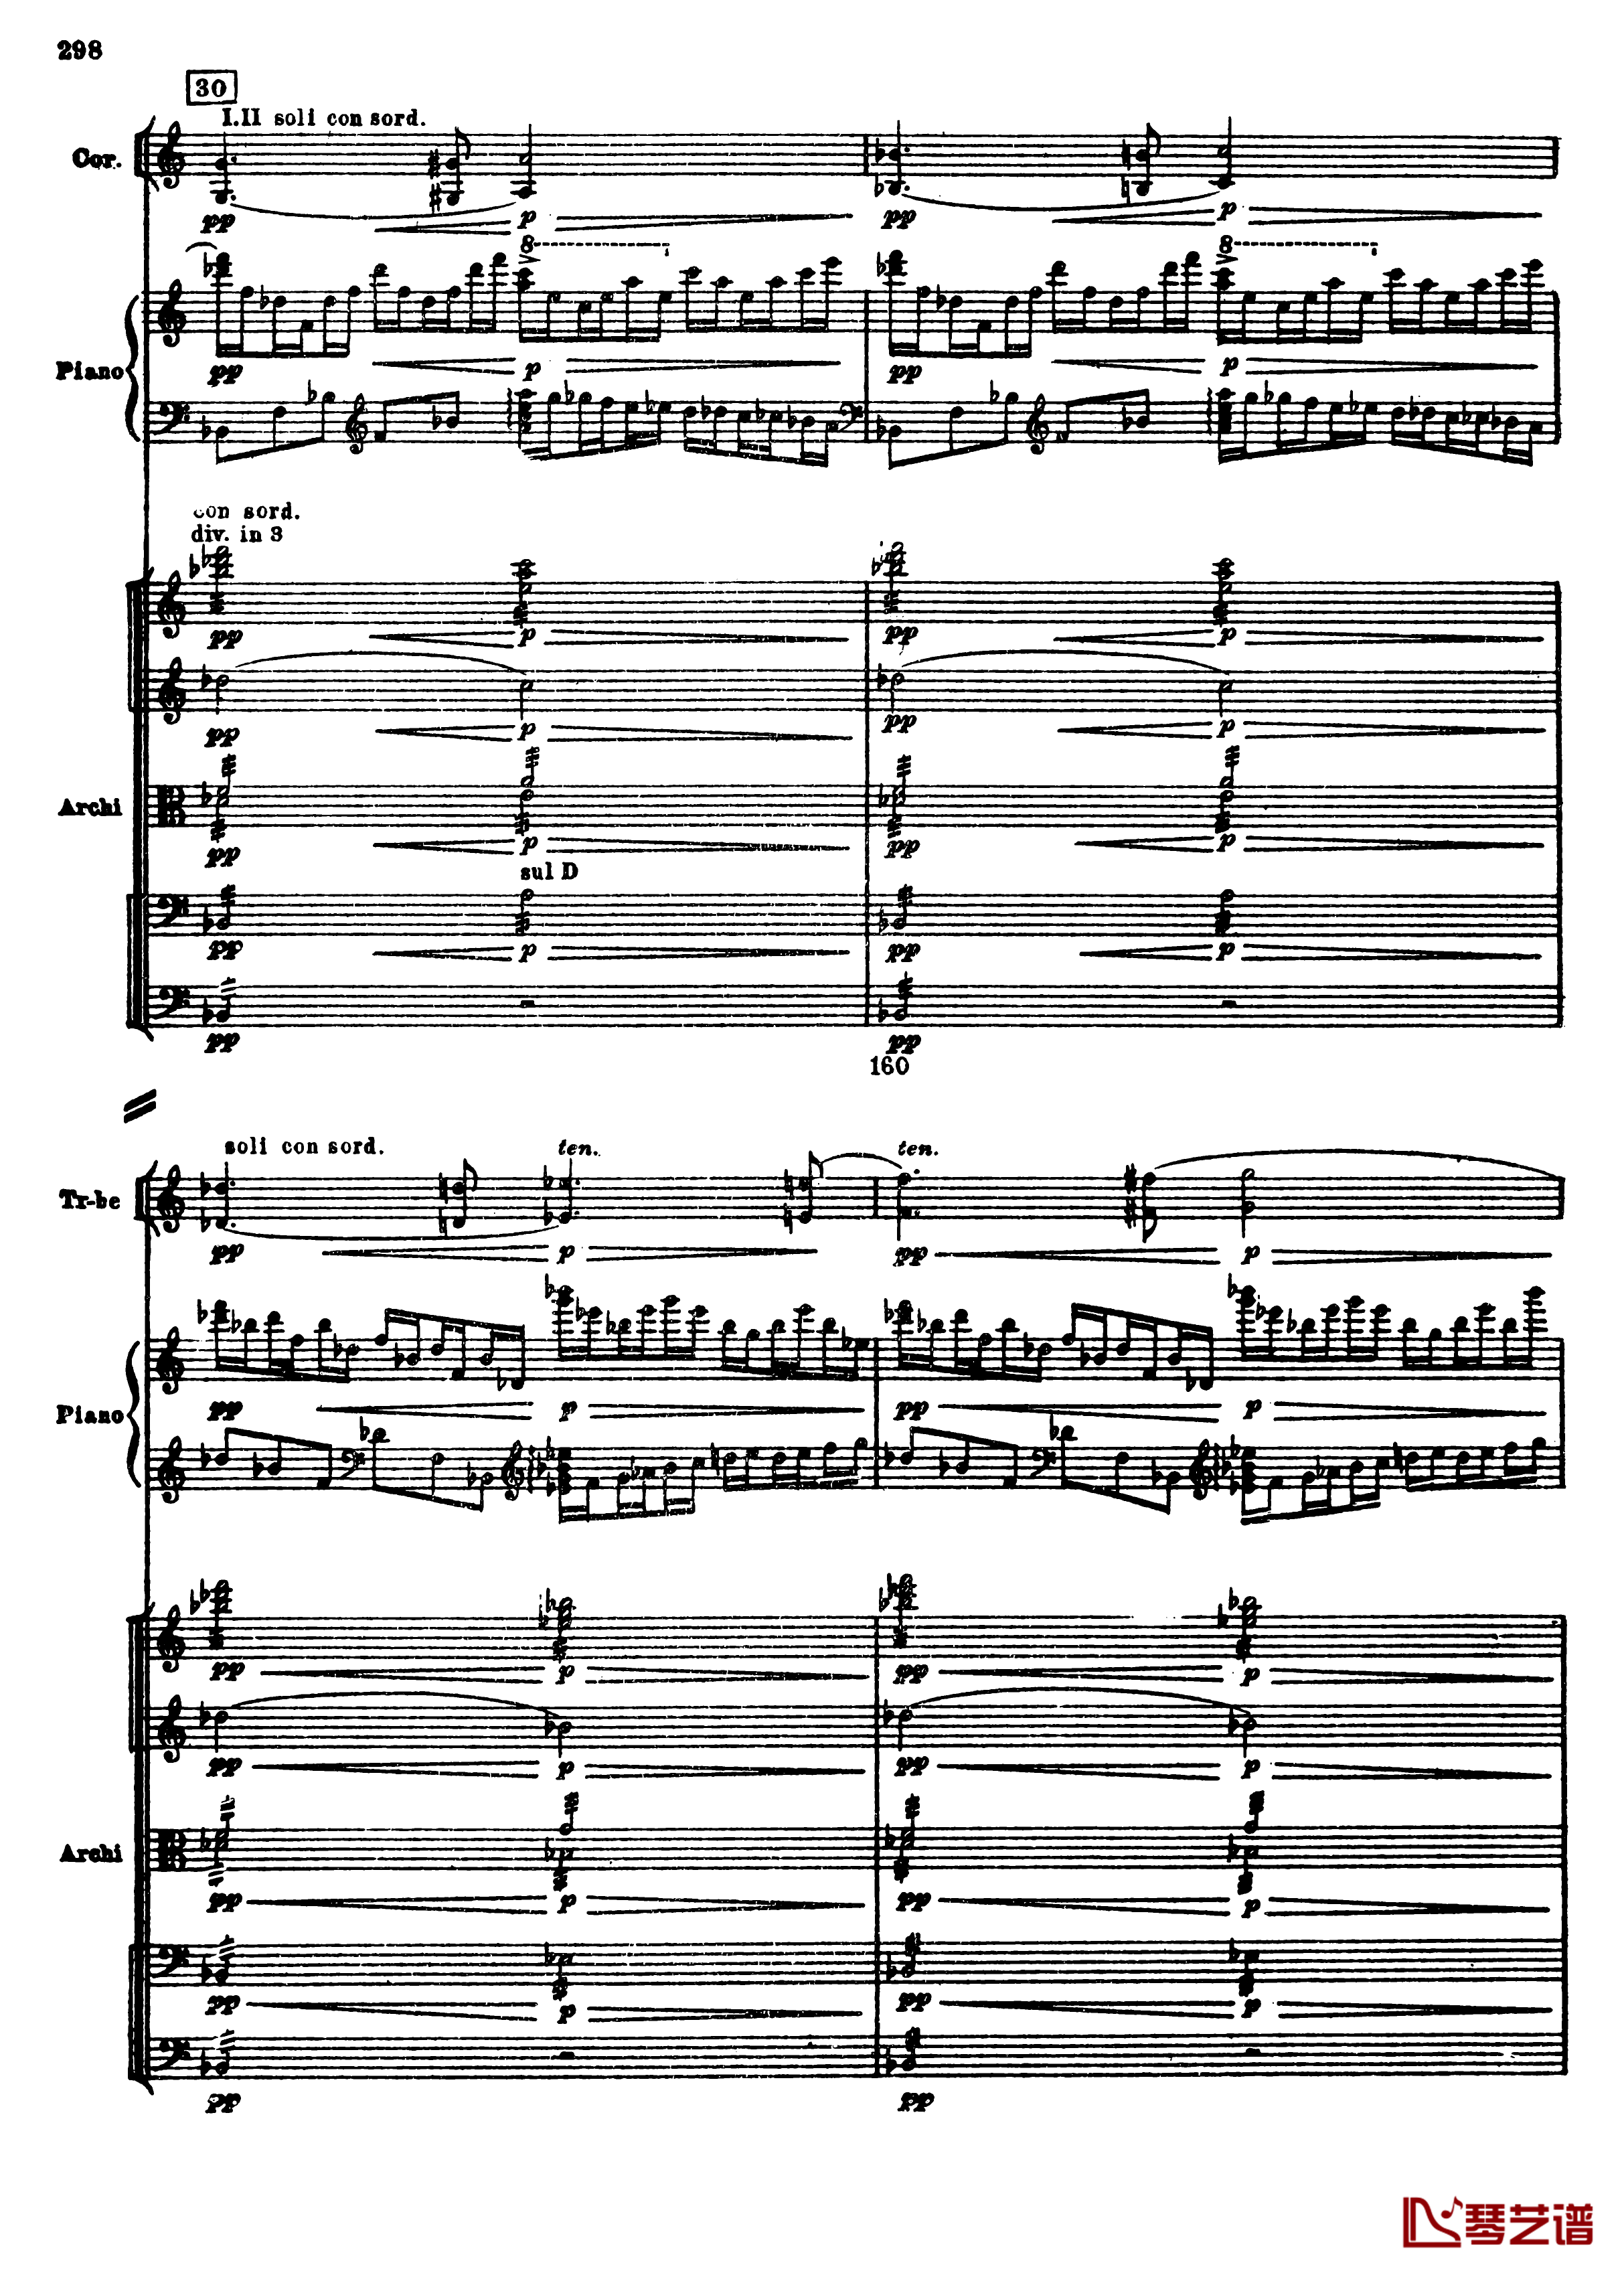 普罗科菲耶夫第三钢琴协奏曲钢琴谱-总谱-普罗科非耶夫30